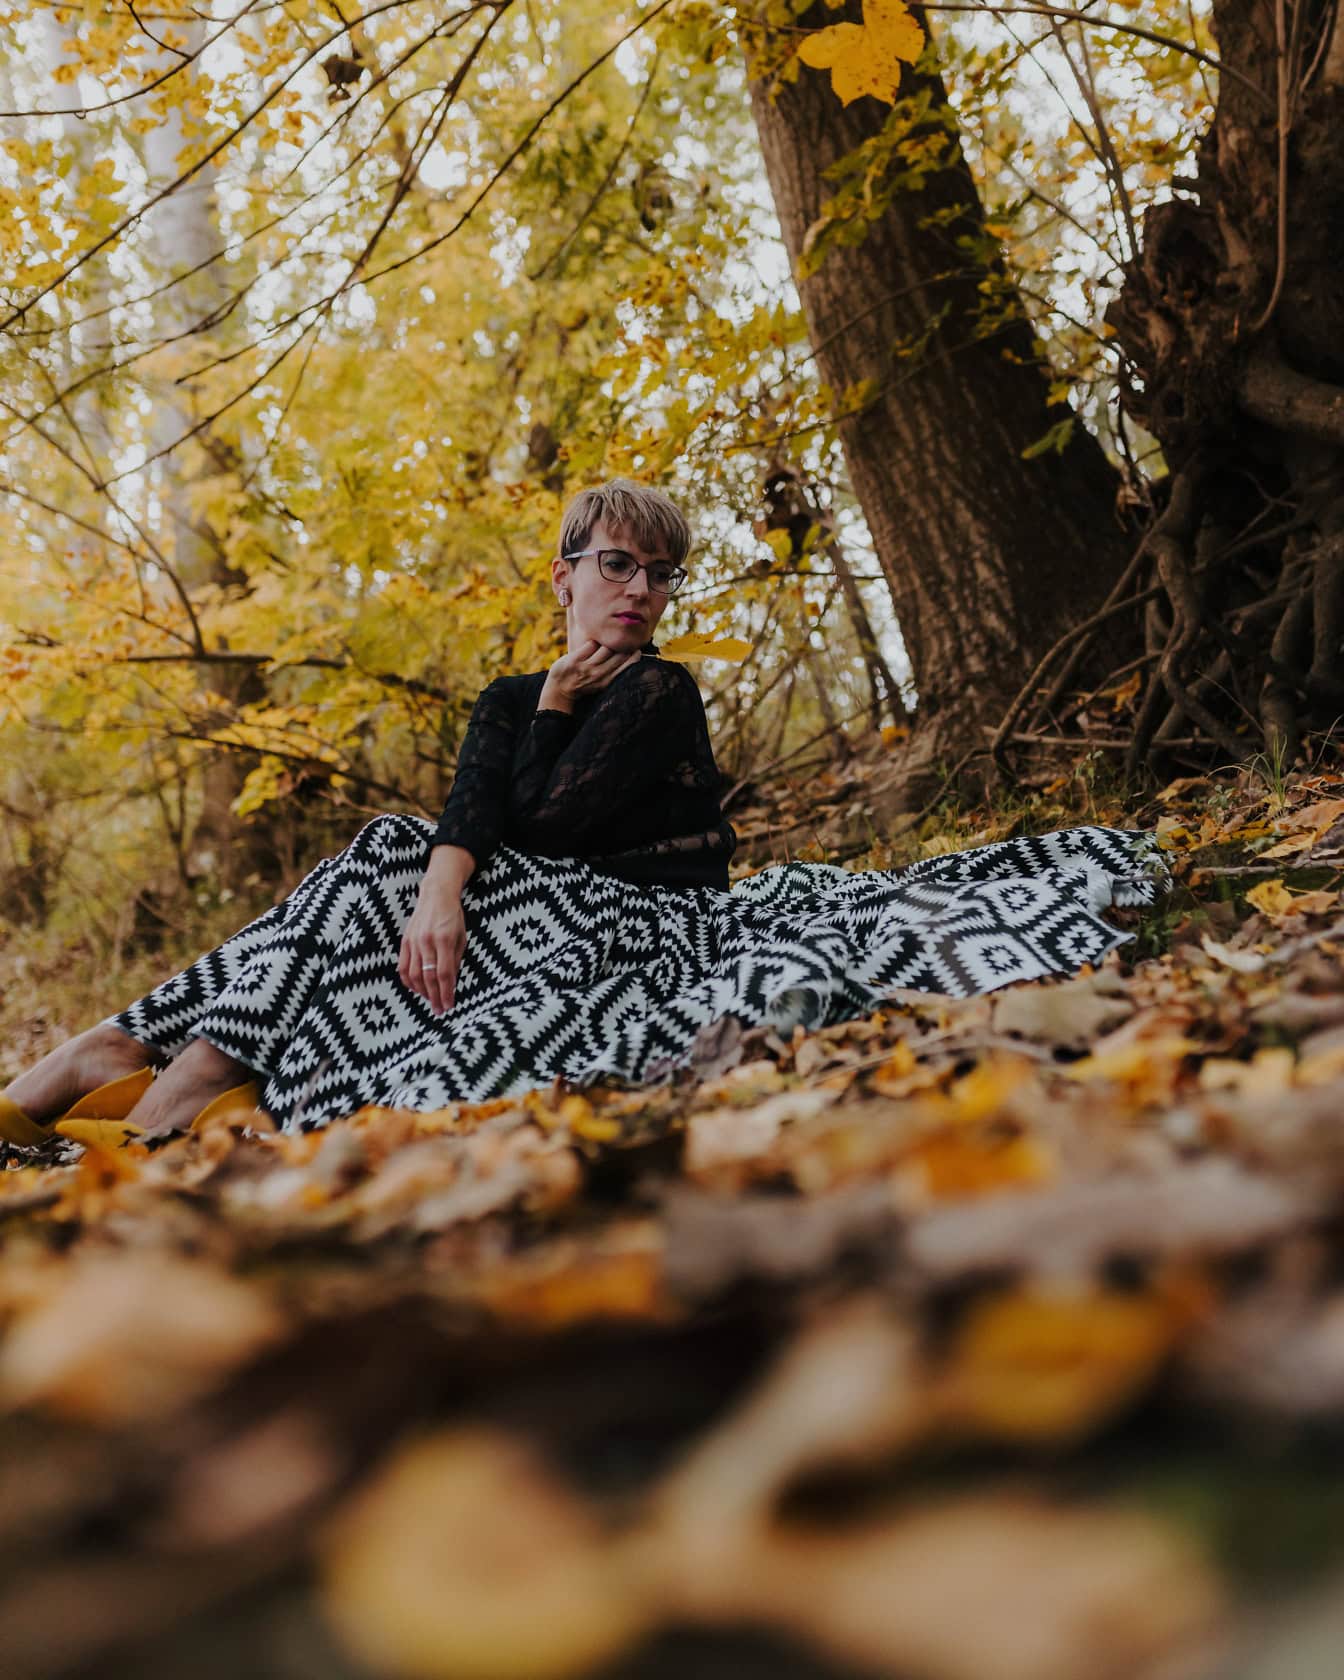 Sonbaharda ormanda ağacın altında siyah beyaz etekle oturan kadın